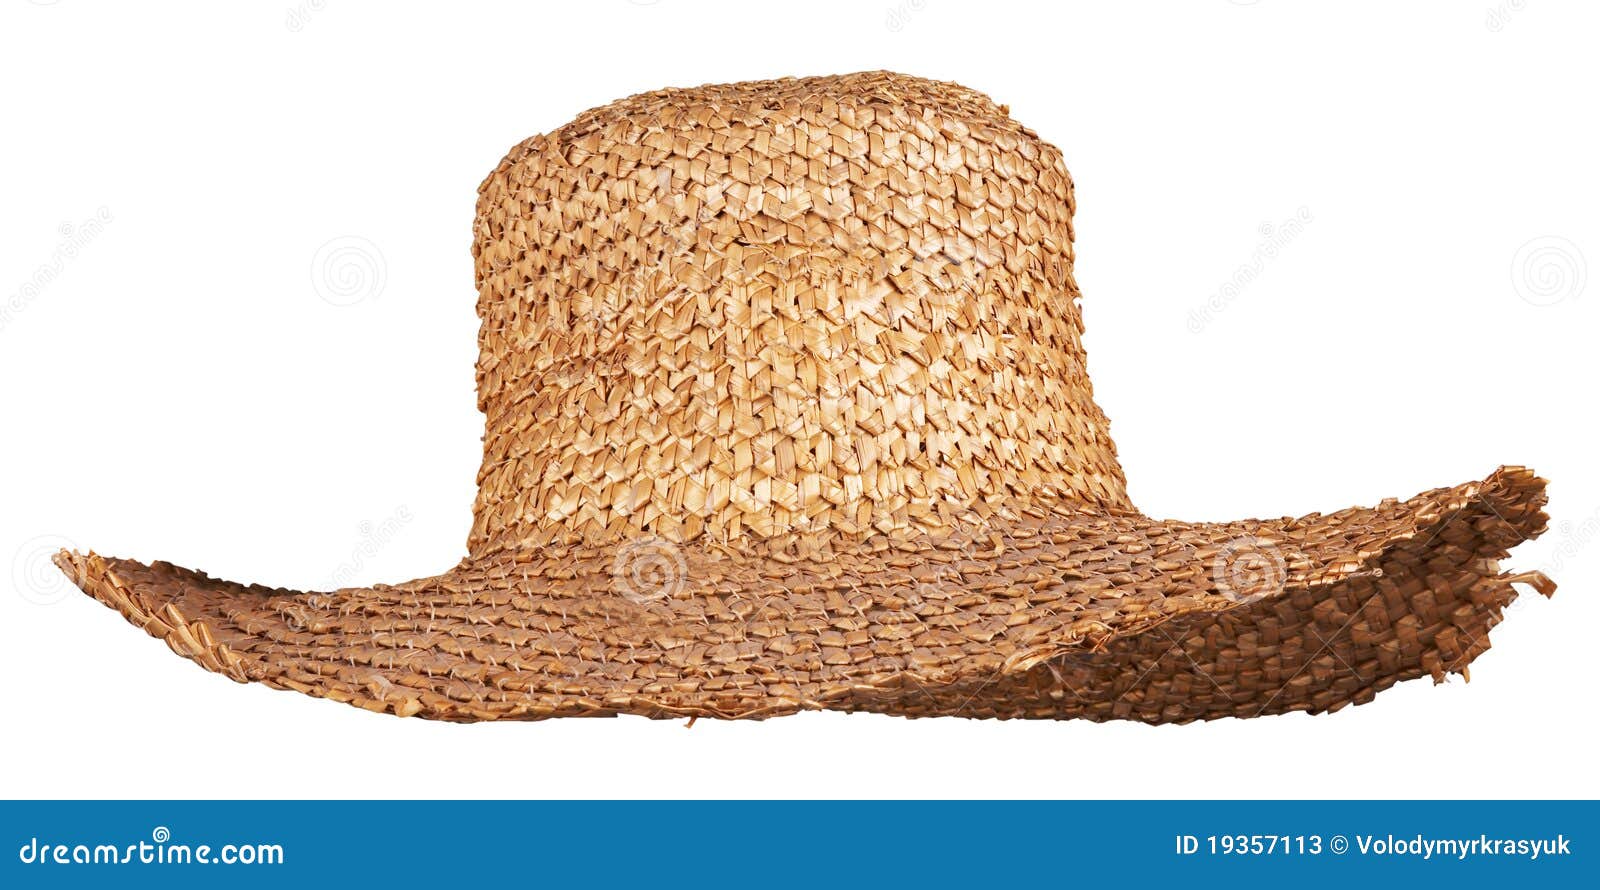 yellow wicker straw hat 